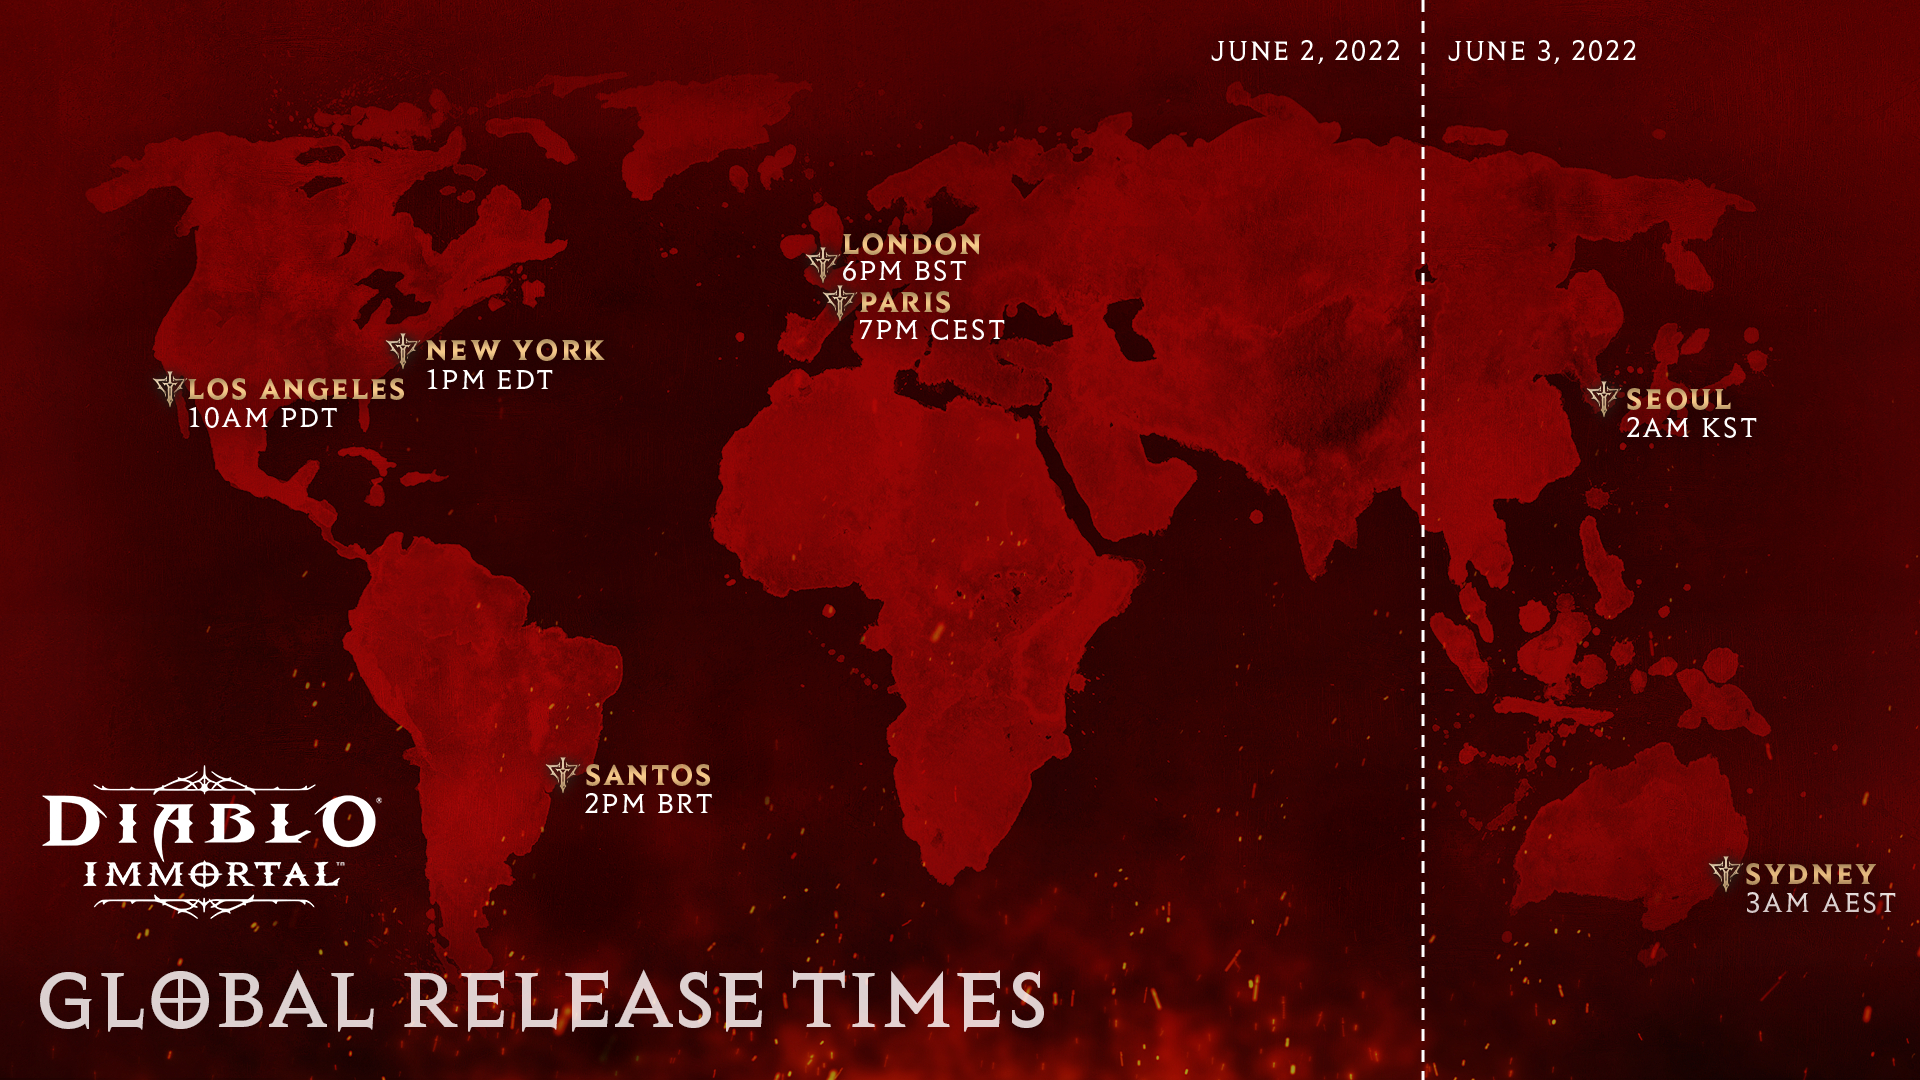 Une carte infographique indiquant la date de sortie de Diablo Immortal par fuseau horaire.